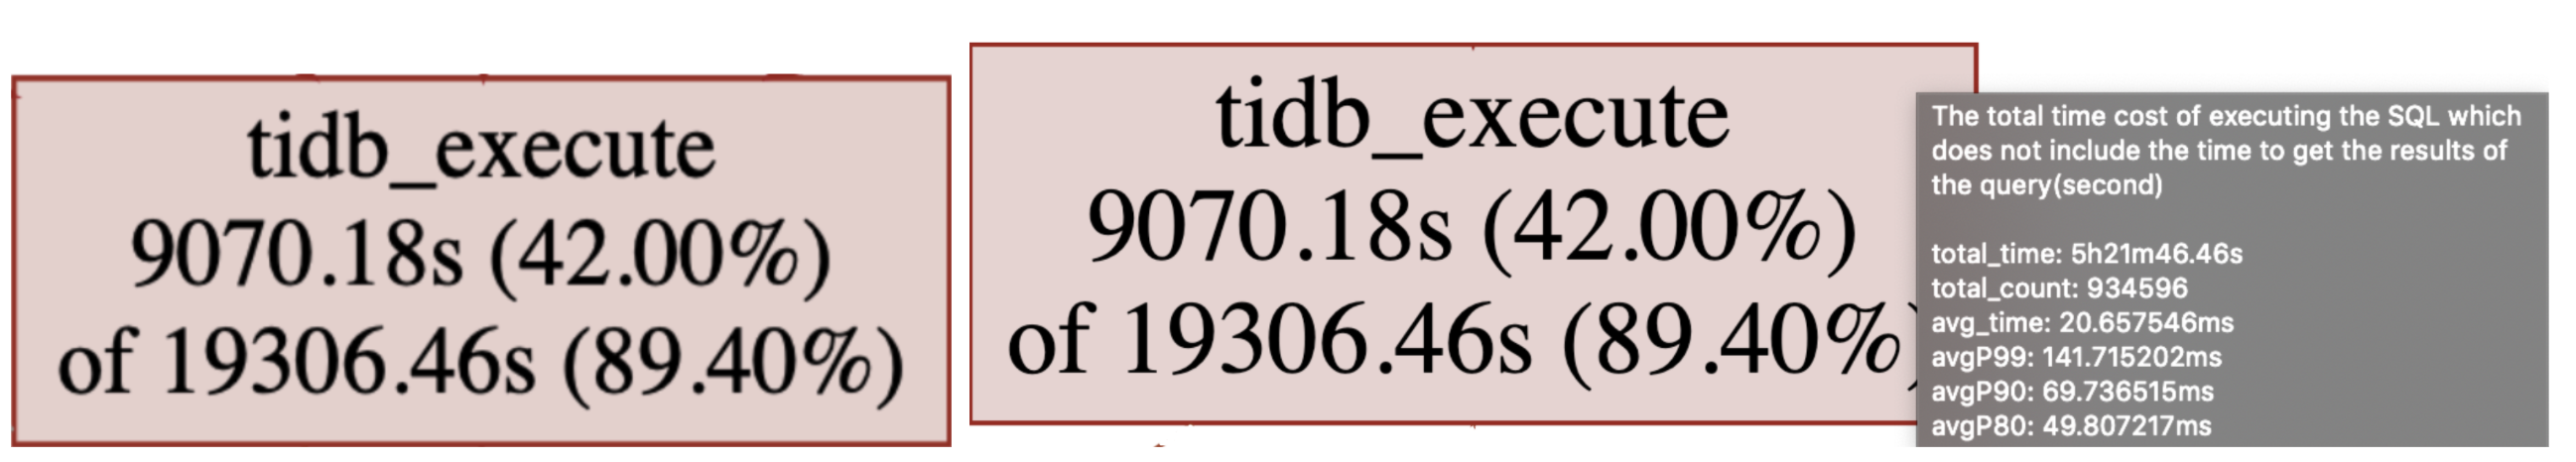 监控关系图 tidb_execute 节点示例